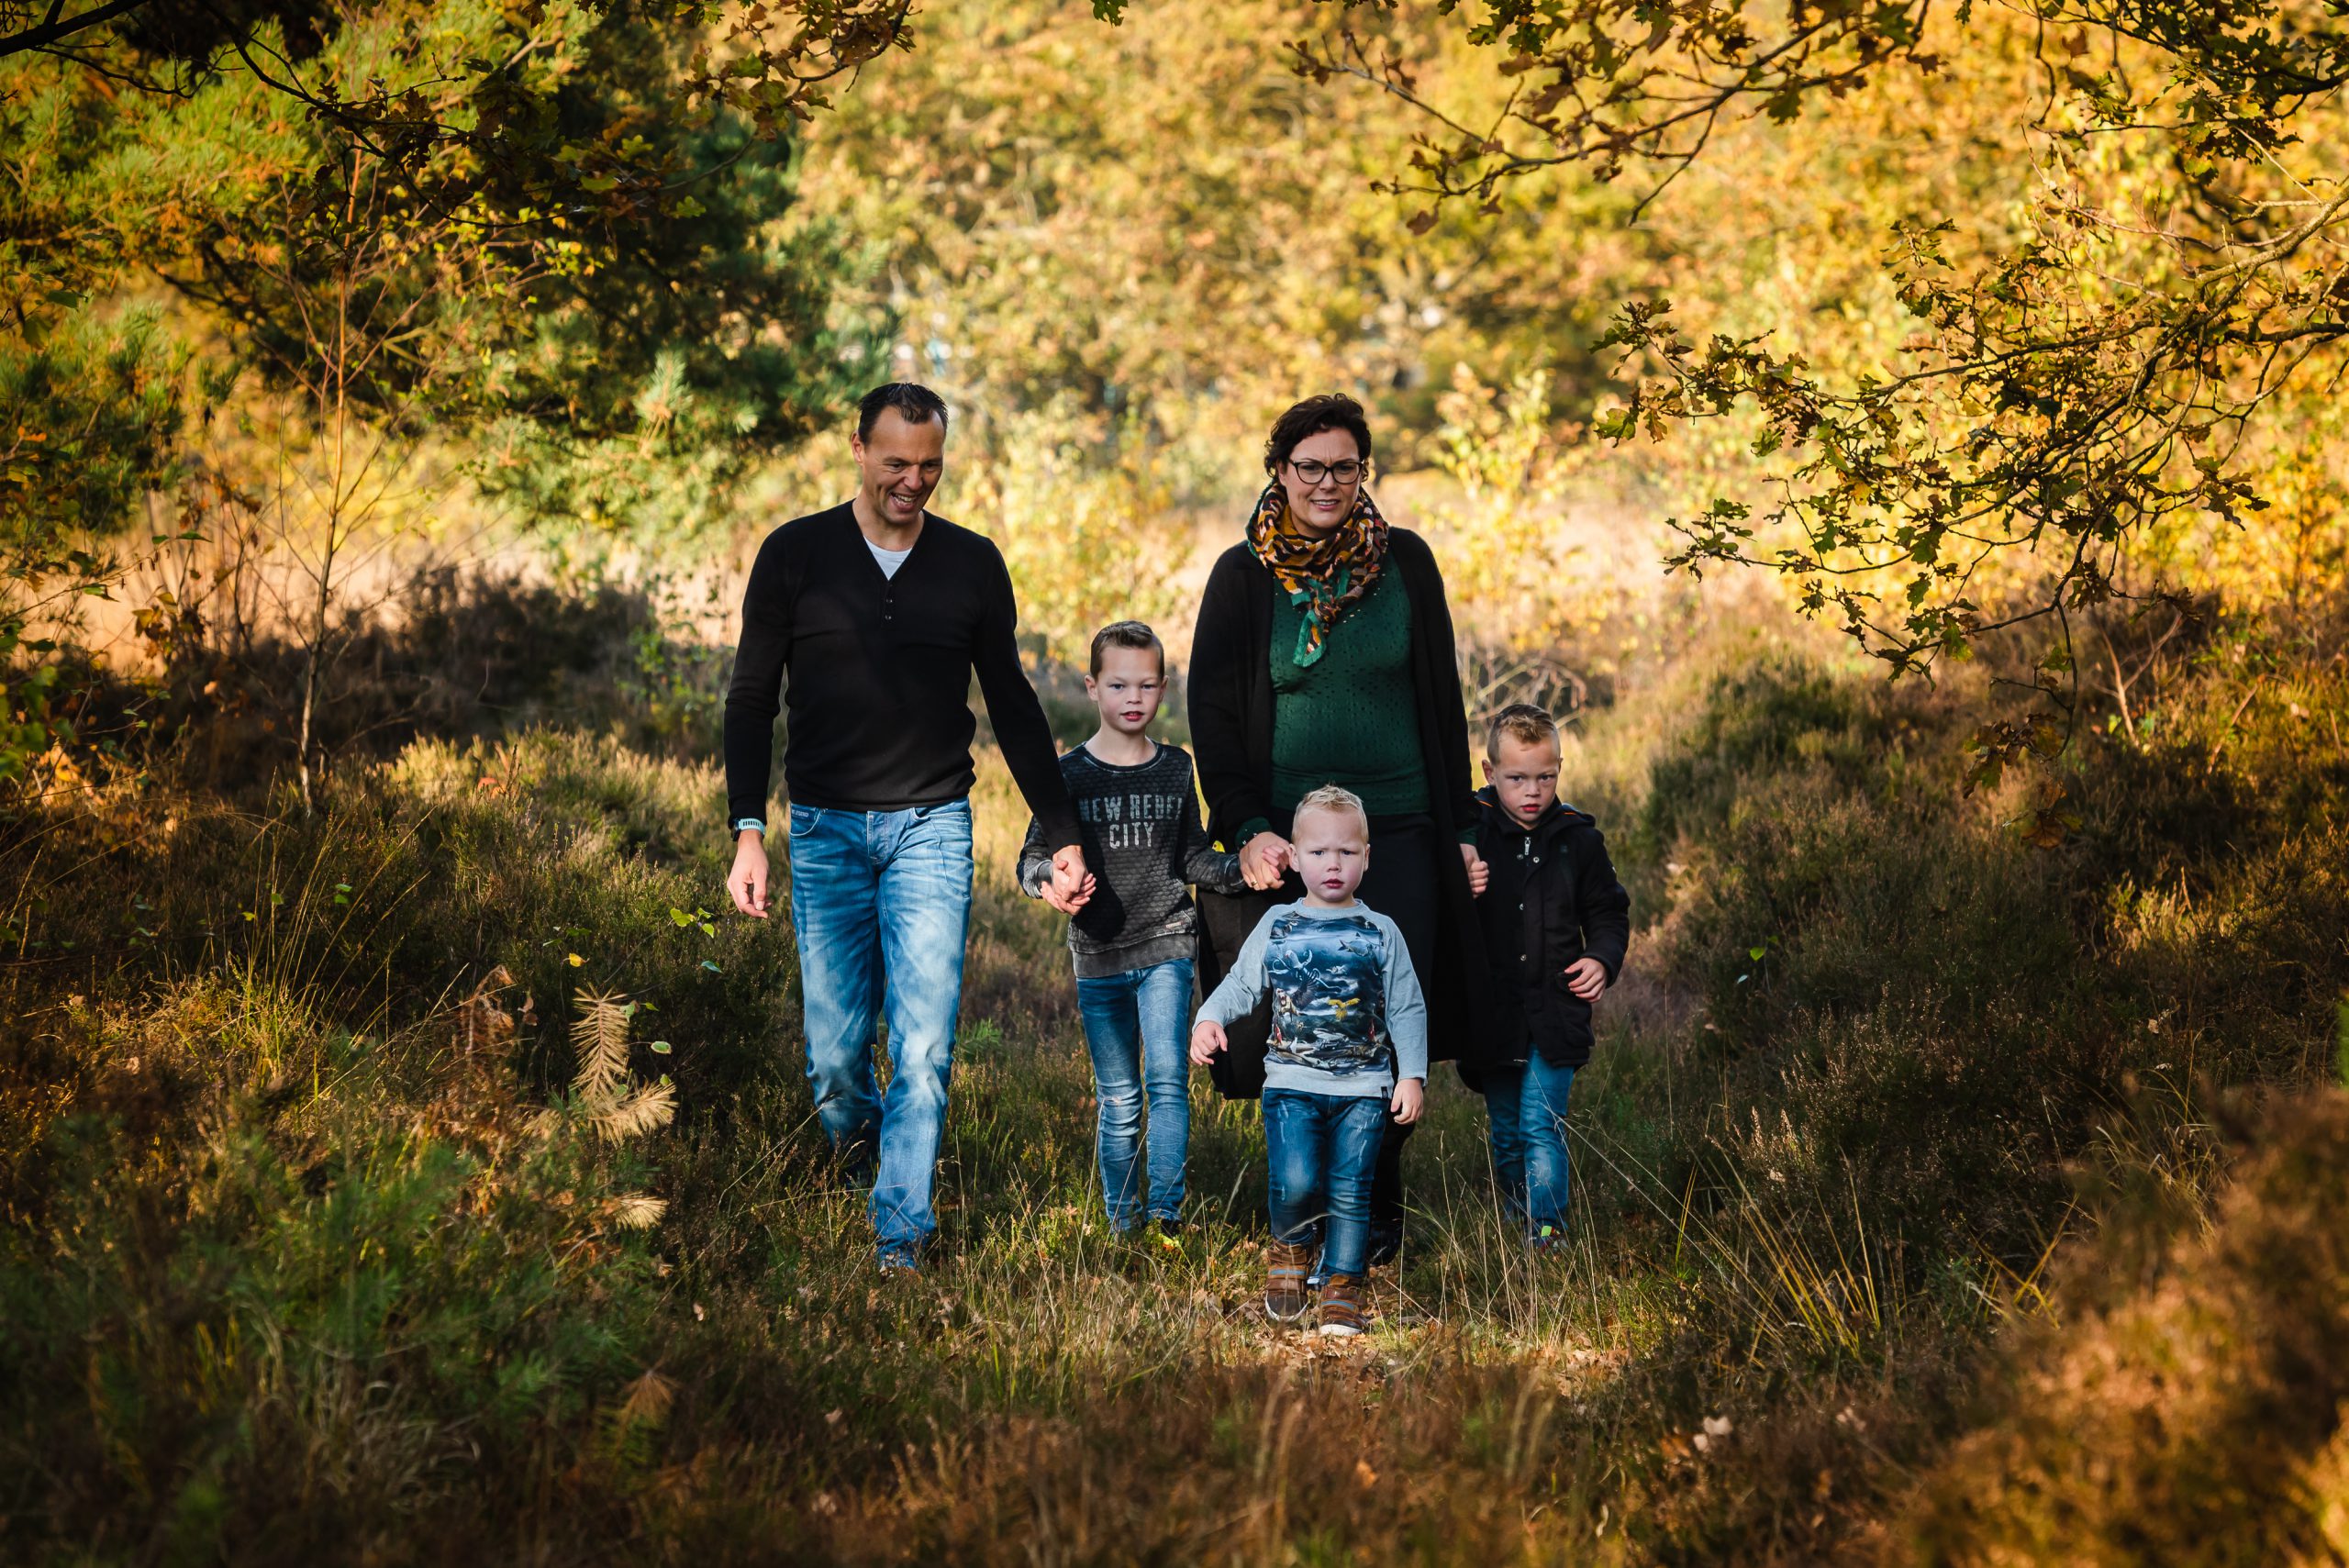 Picknicken op de heide met gezin, in Assen, Drenthe, Familiefotograaf Assen, gezinsfotograaf Assen, familiefotograaf drenthe, fotograaf drenthe, gezinsfotograaf drenthe, jonge kinderen, kleine jonge, herfst kleuren, buiten spelen, outdoor